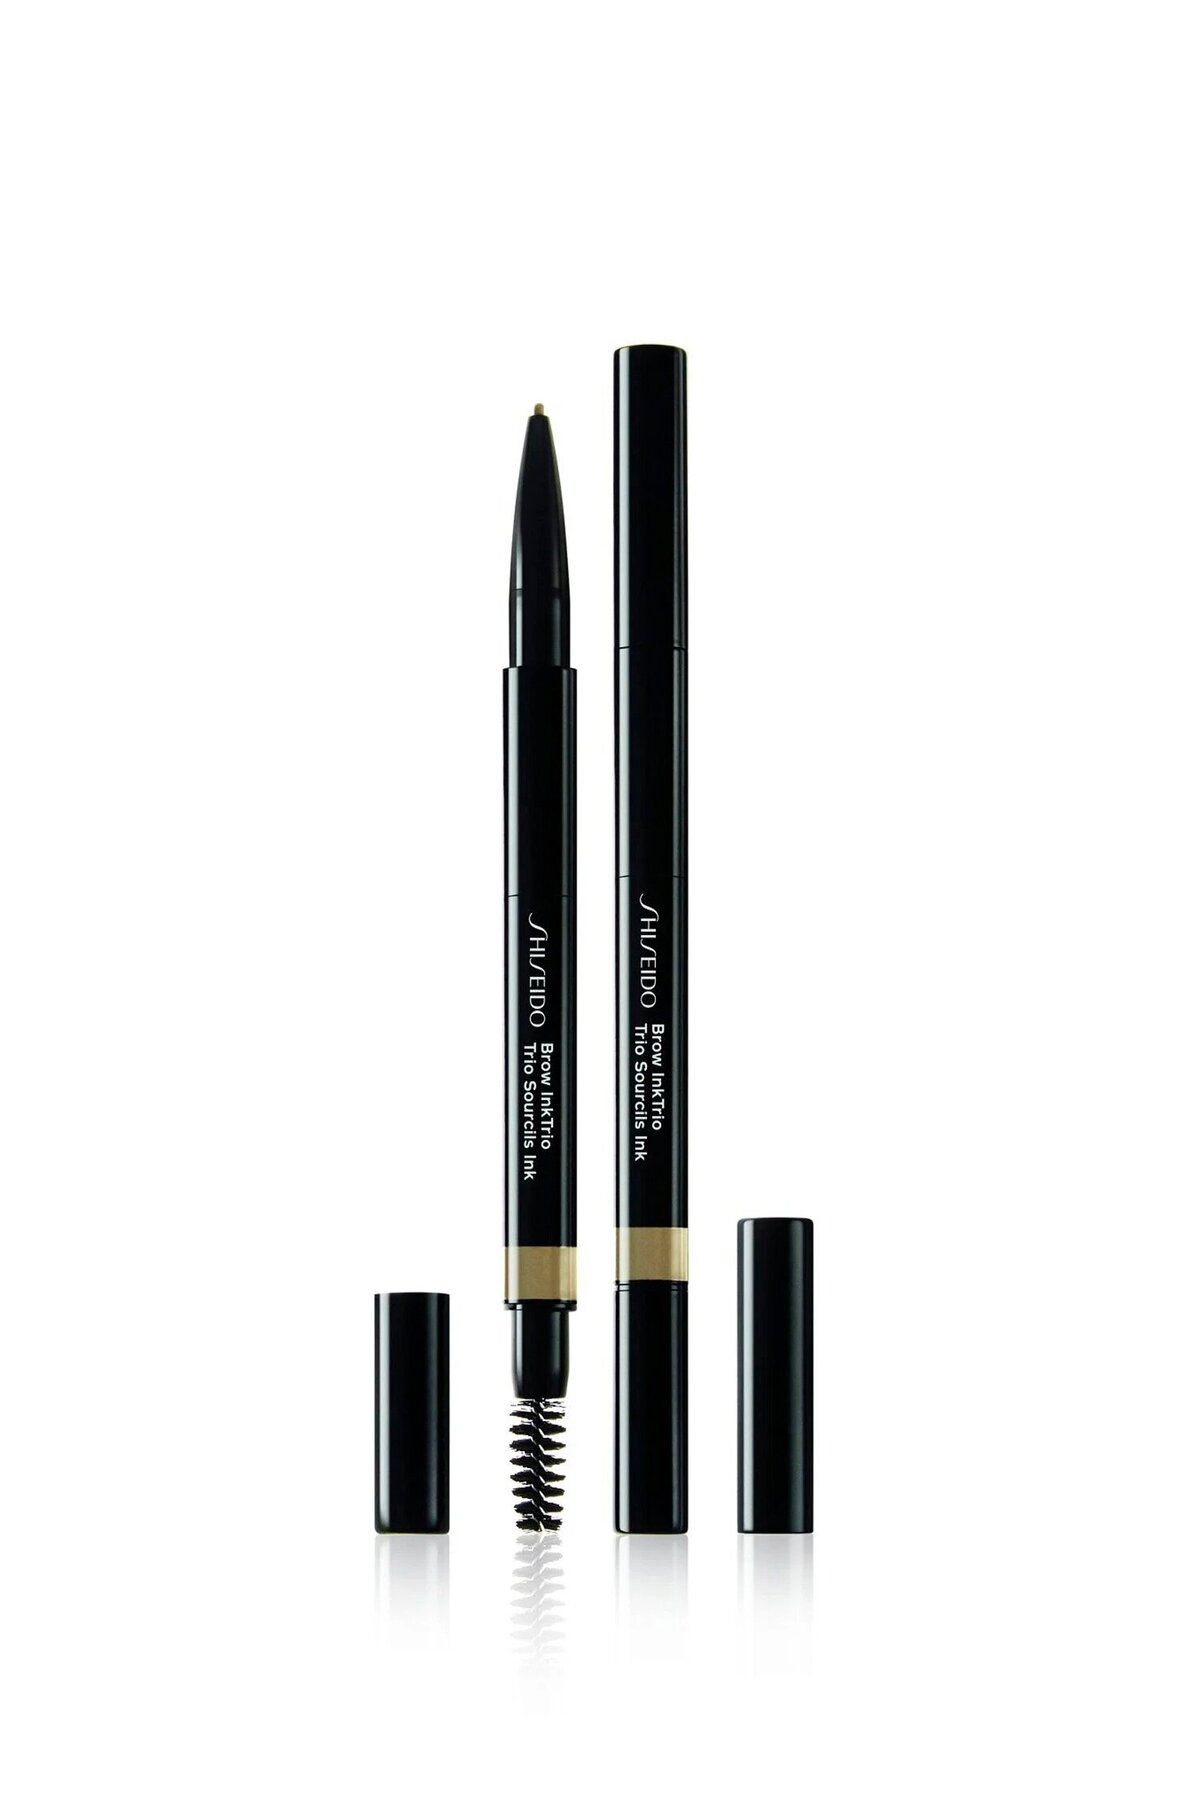 Shiseido مداد ابرو ۳ در یک پر کردن و شکل دادن ابروها